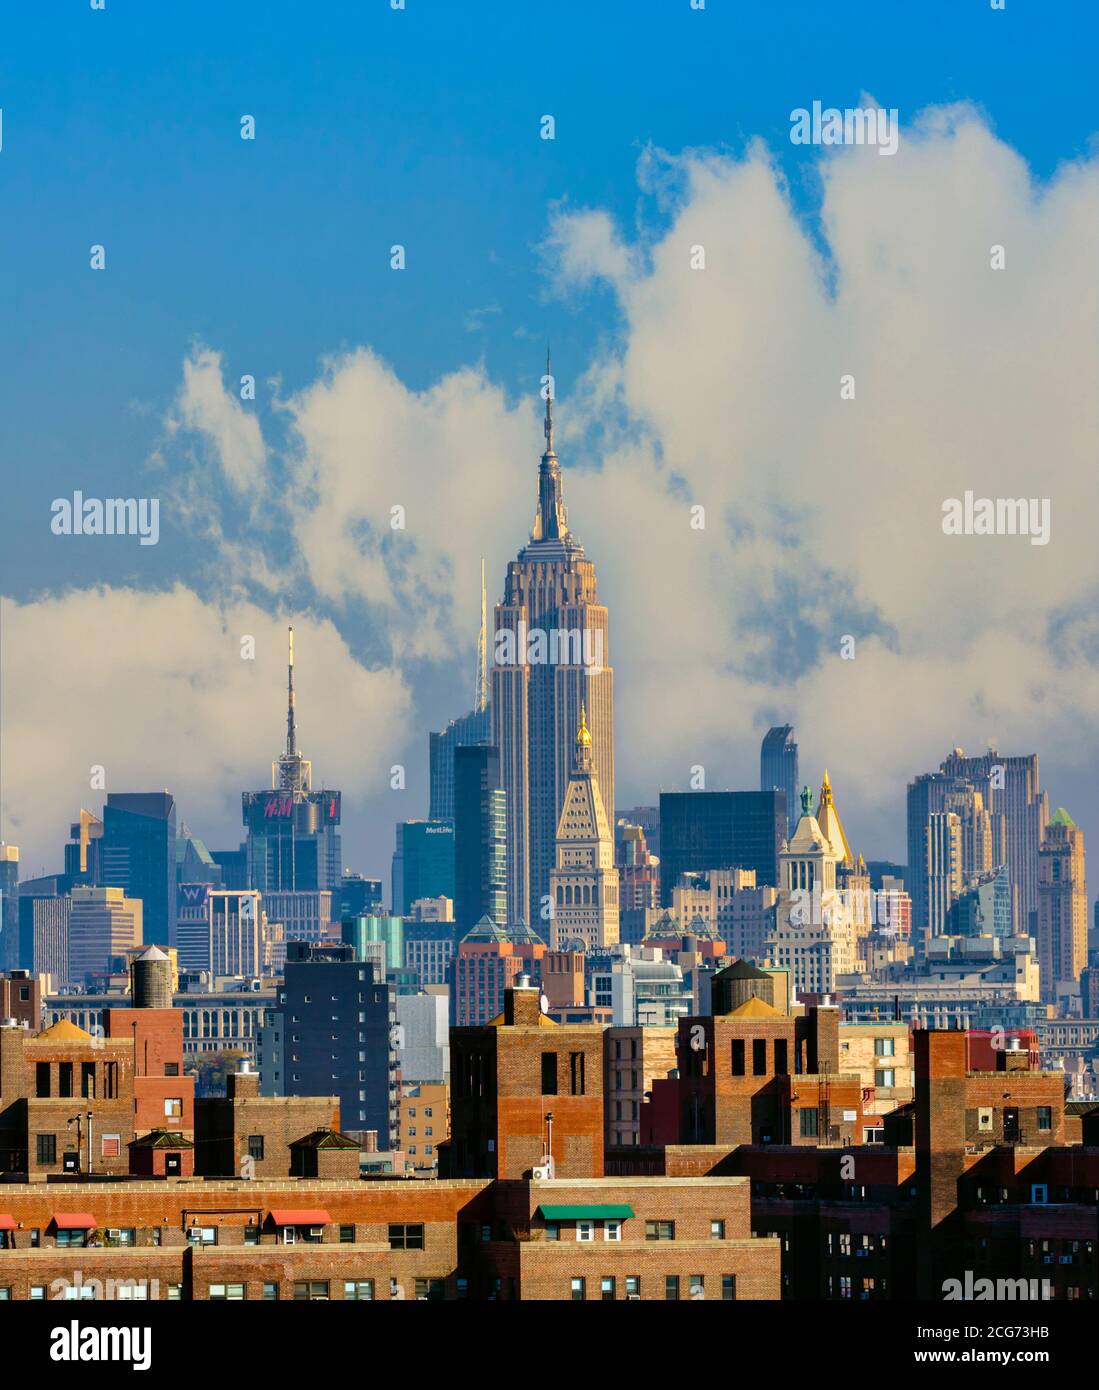 New York, Stato di New York, Stati Uniti d'America. Skyline di Manhattan con l'Empire state Building al centro, visto dal Ponte di Brooklyn. Foto Stock